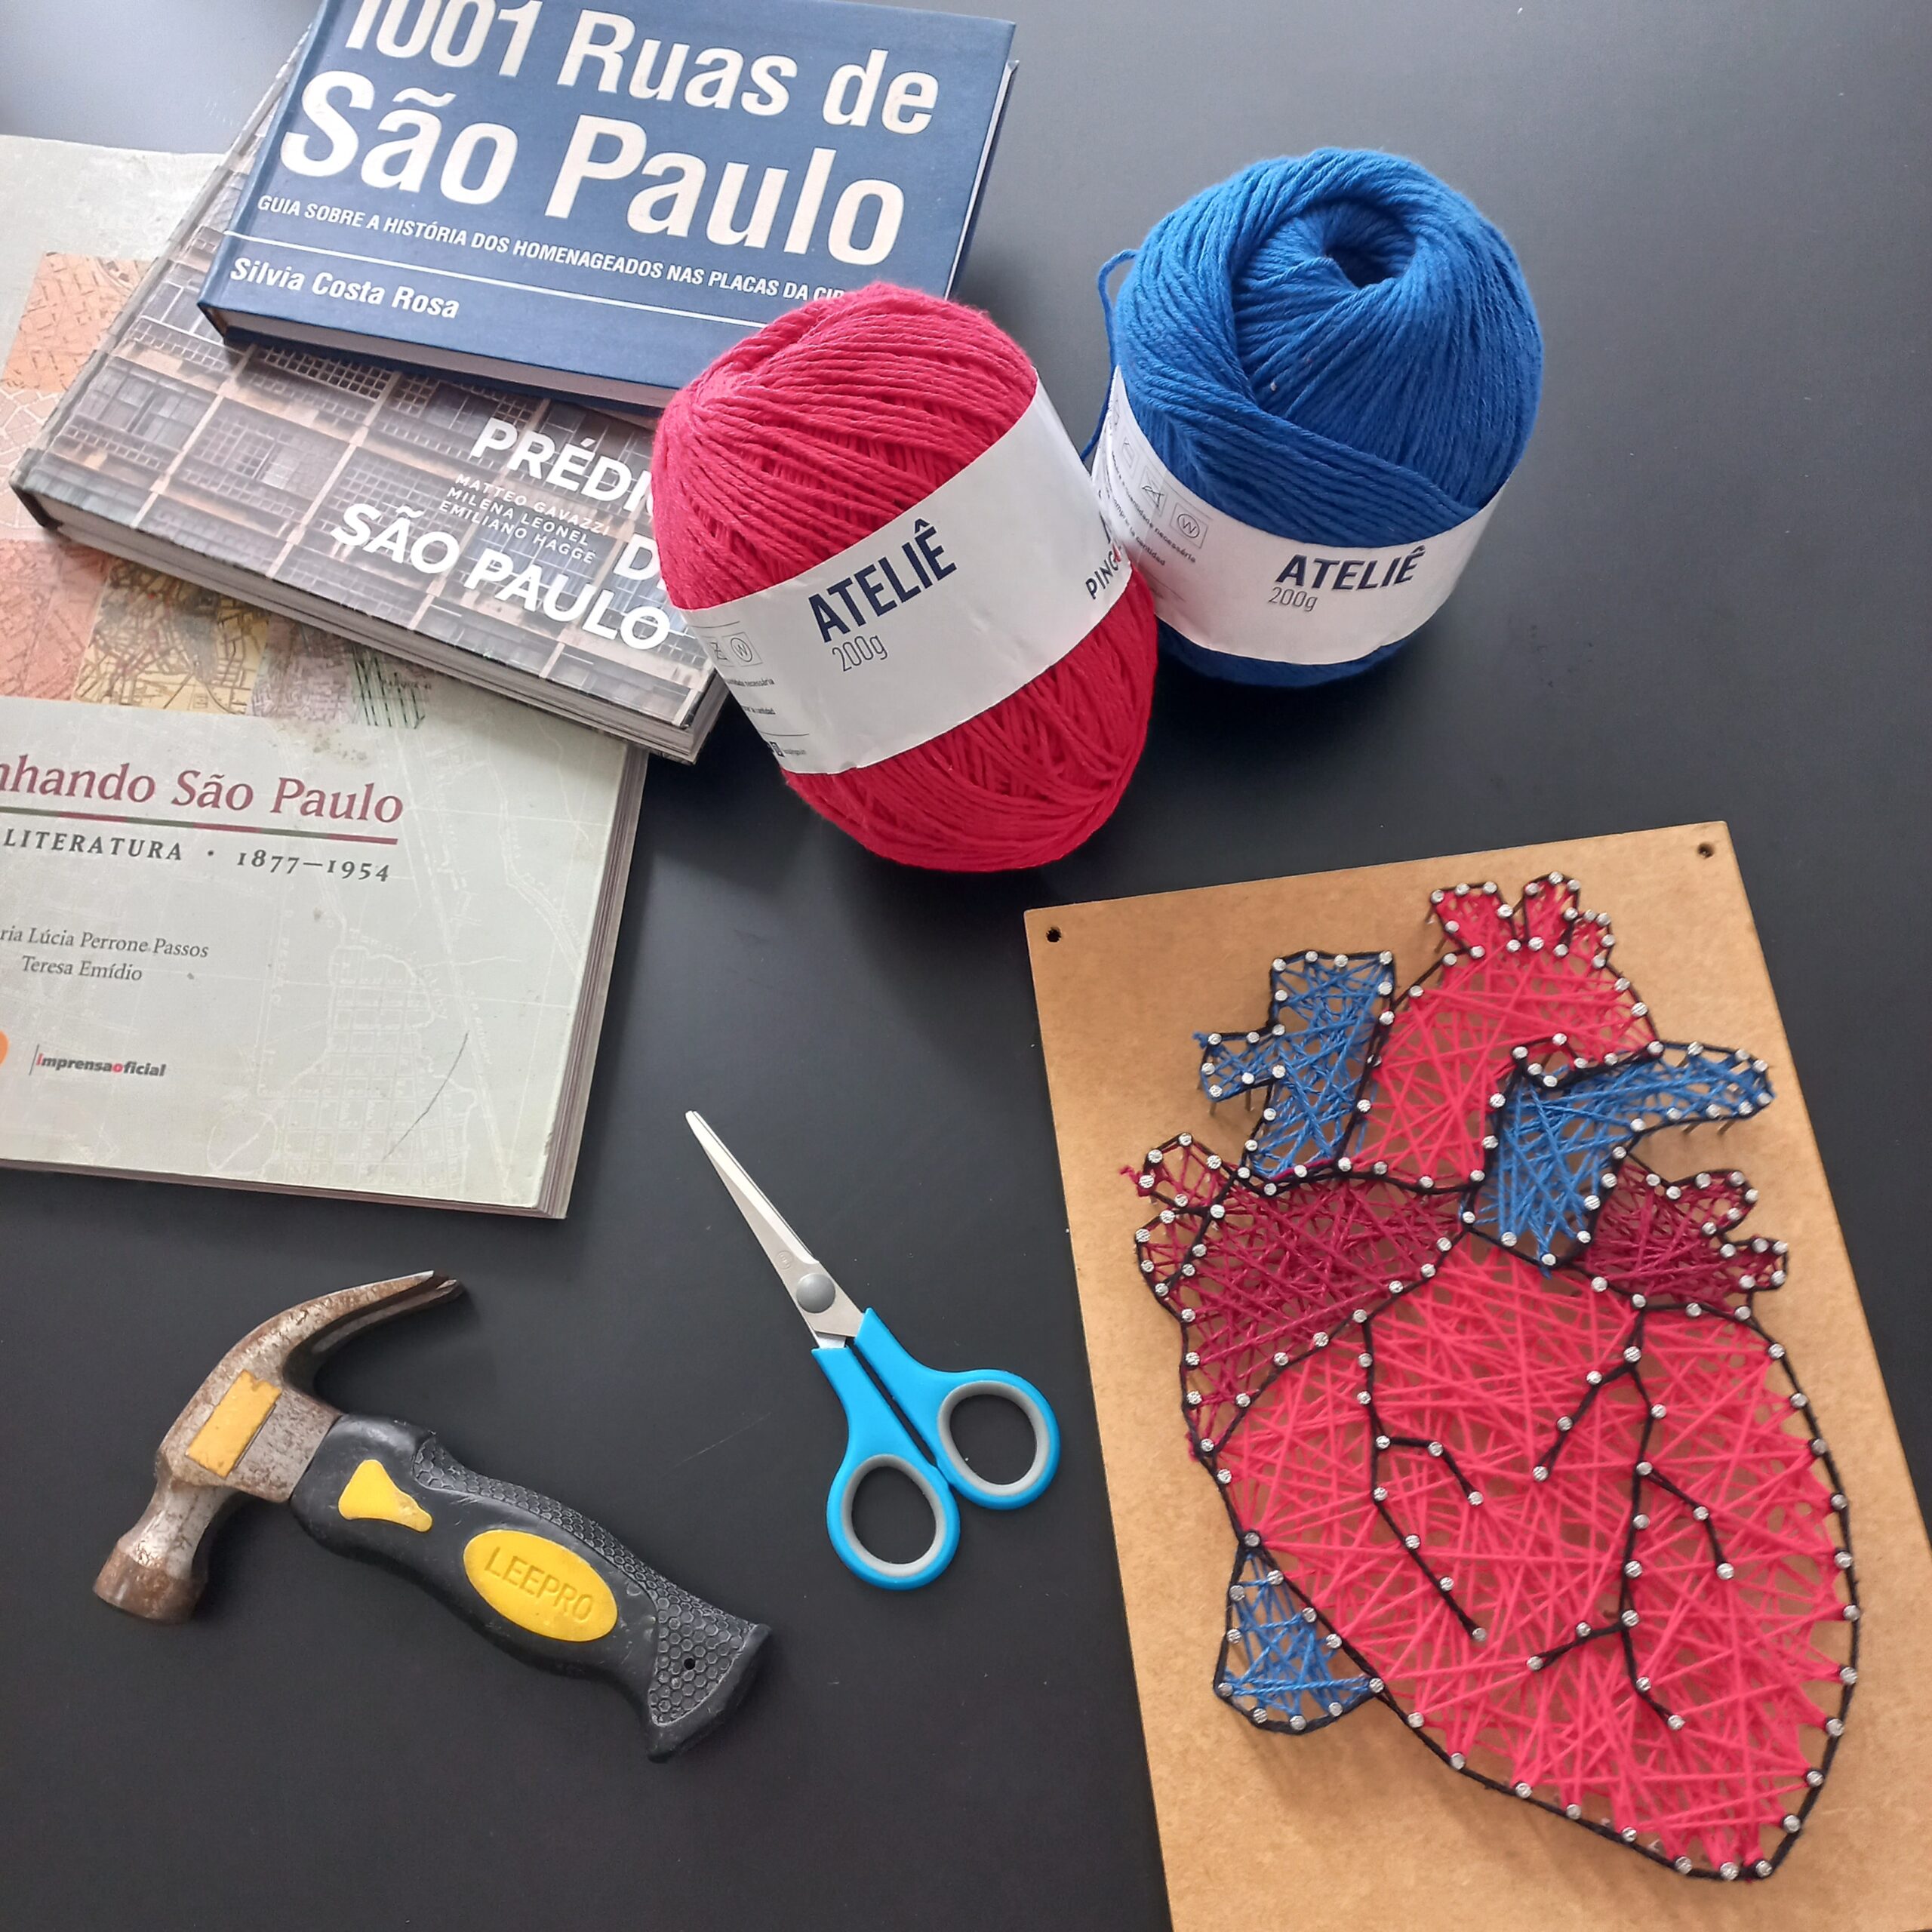 Aniversário de São Paulo